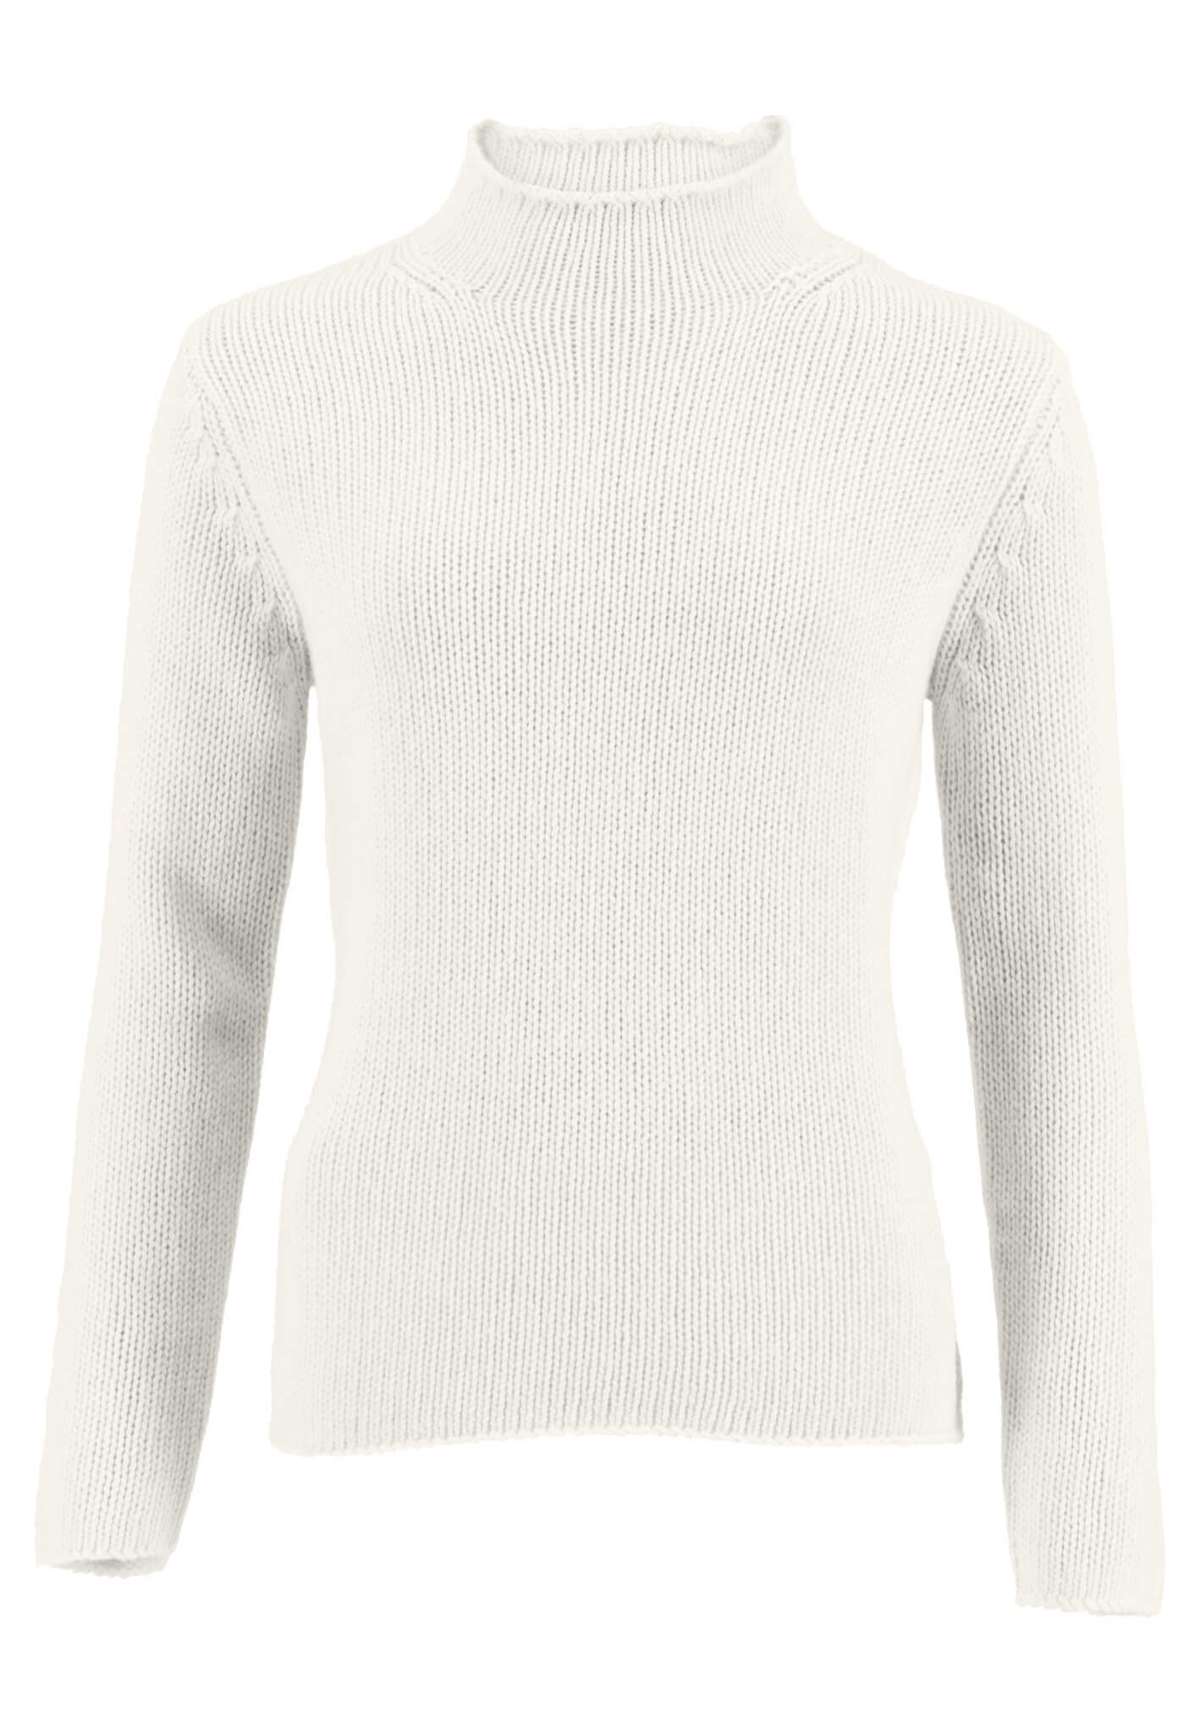 Вязаный свитер с вязаным узором по плечевому шву.